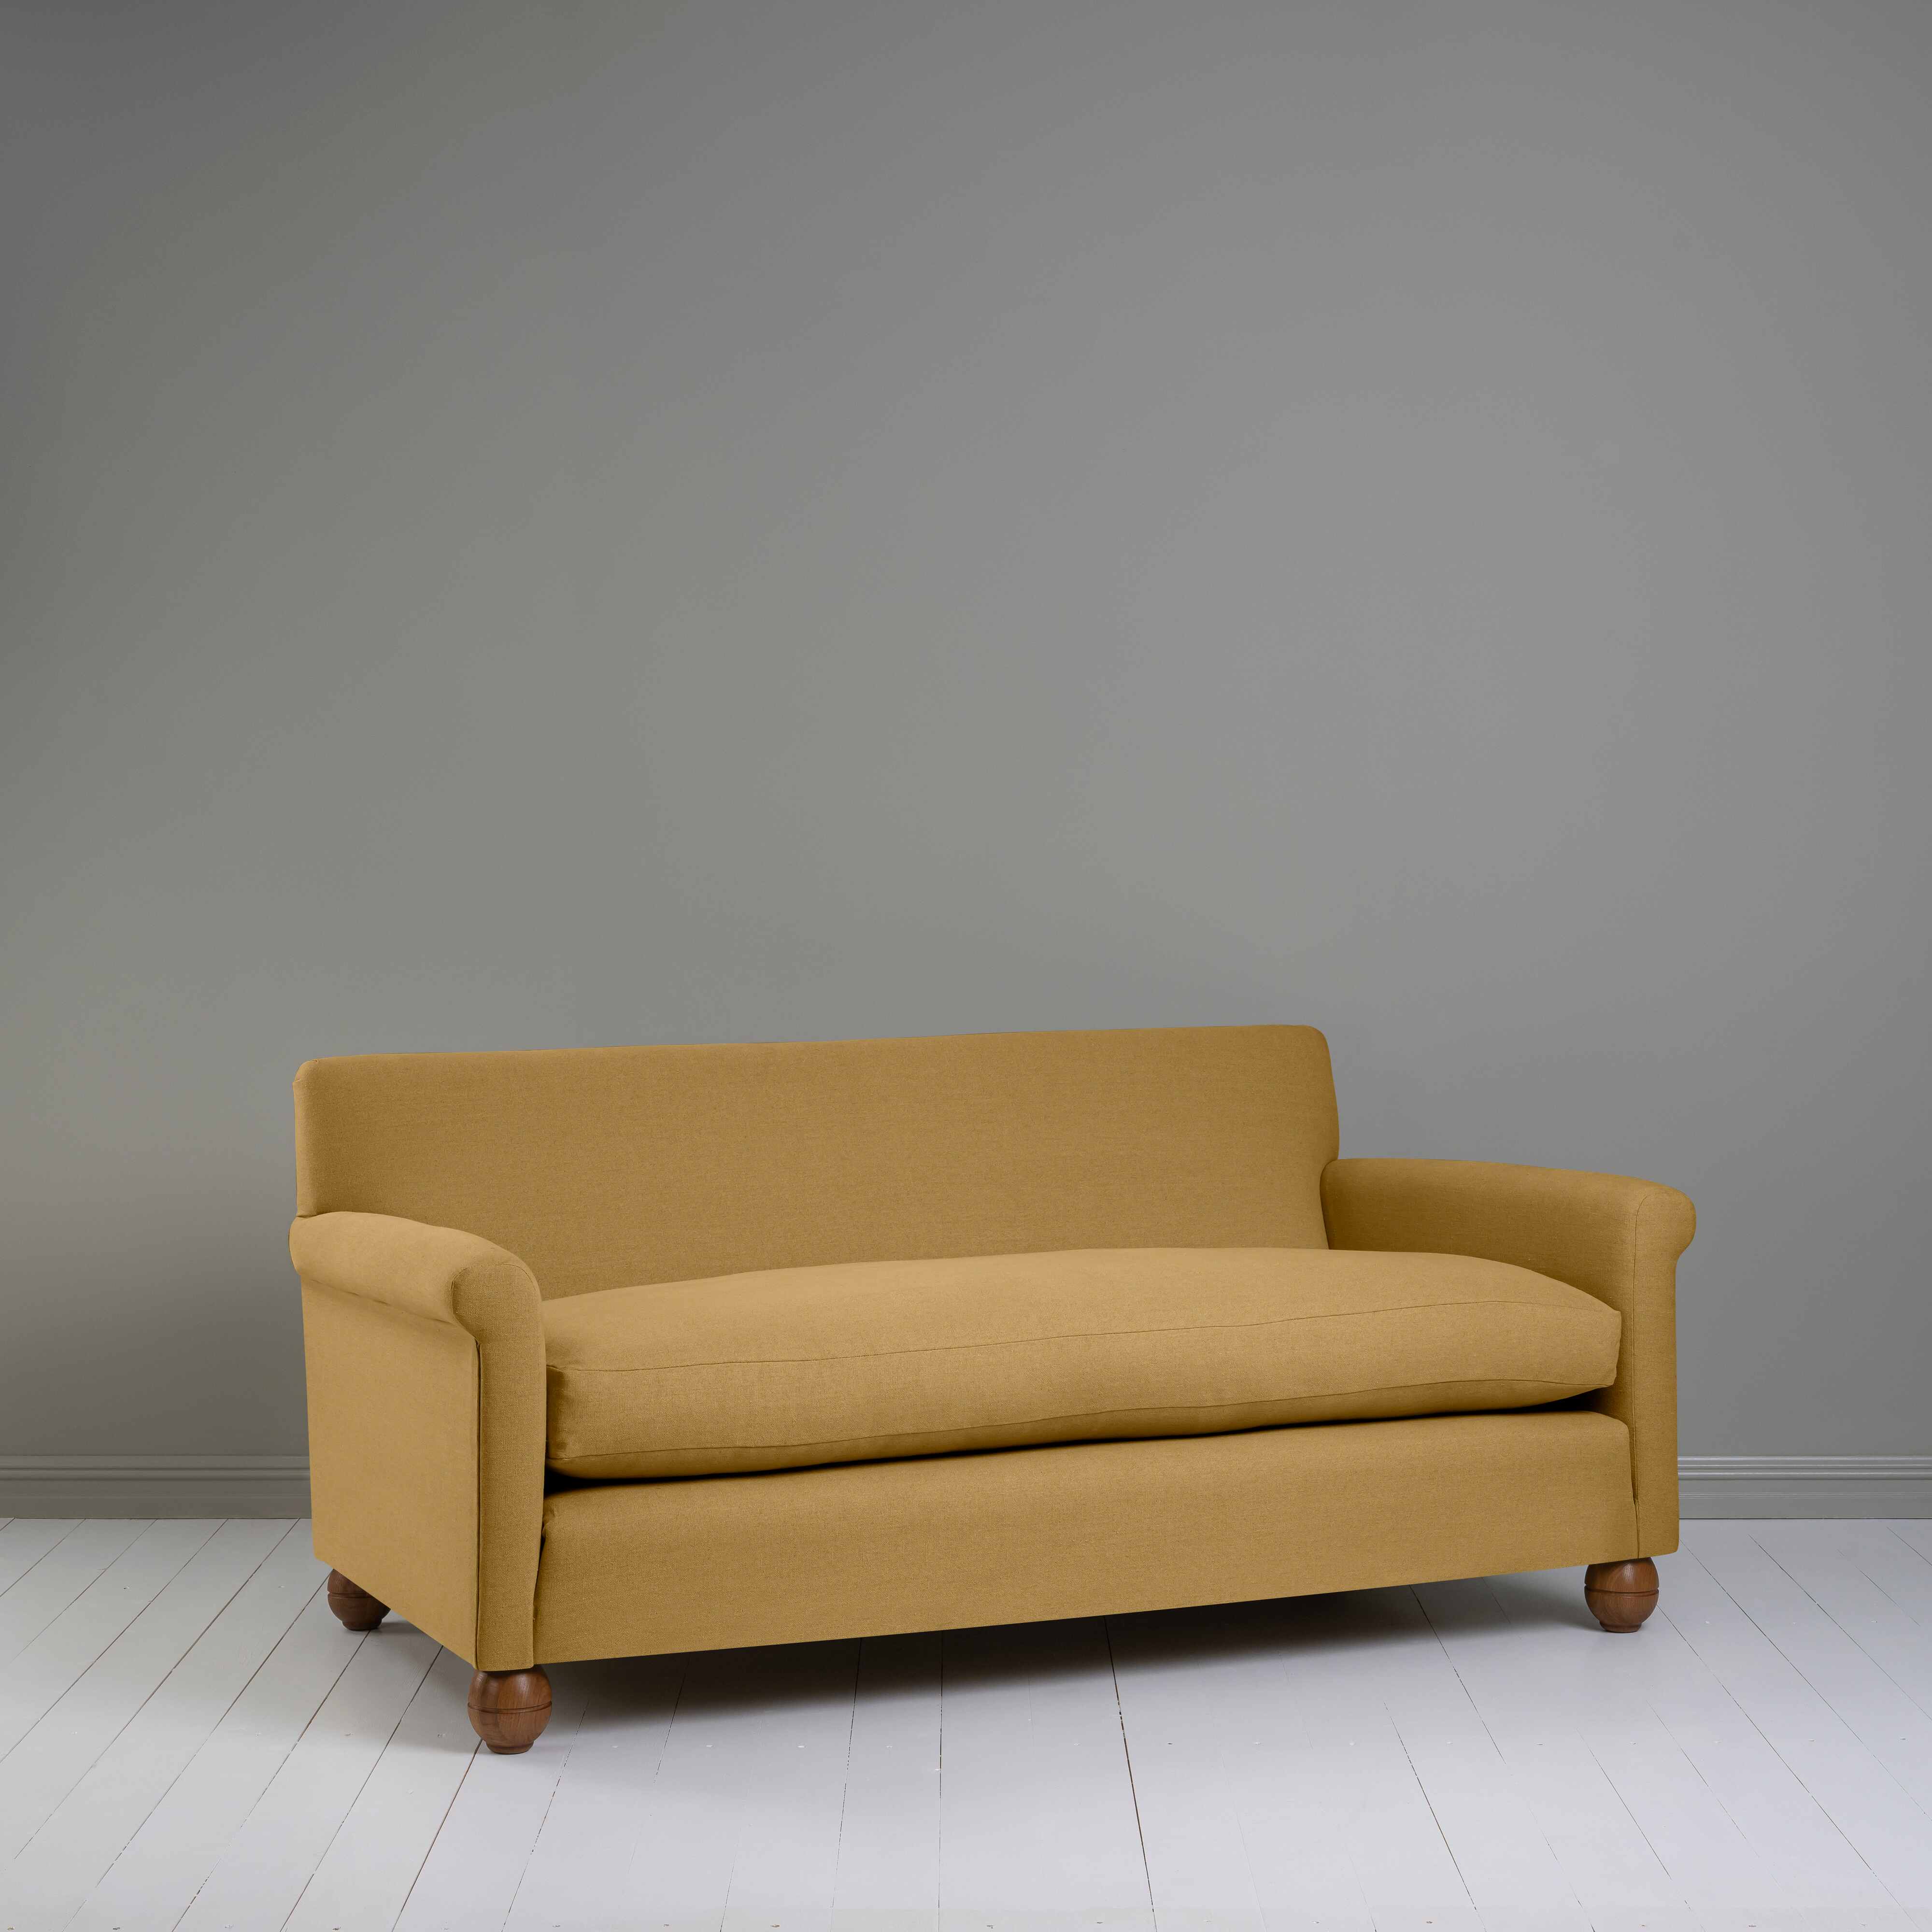  Idler 3 Seater Sofa in Laidback Linen Ochre 